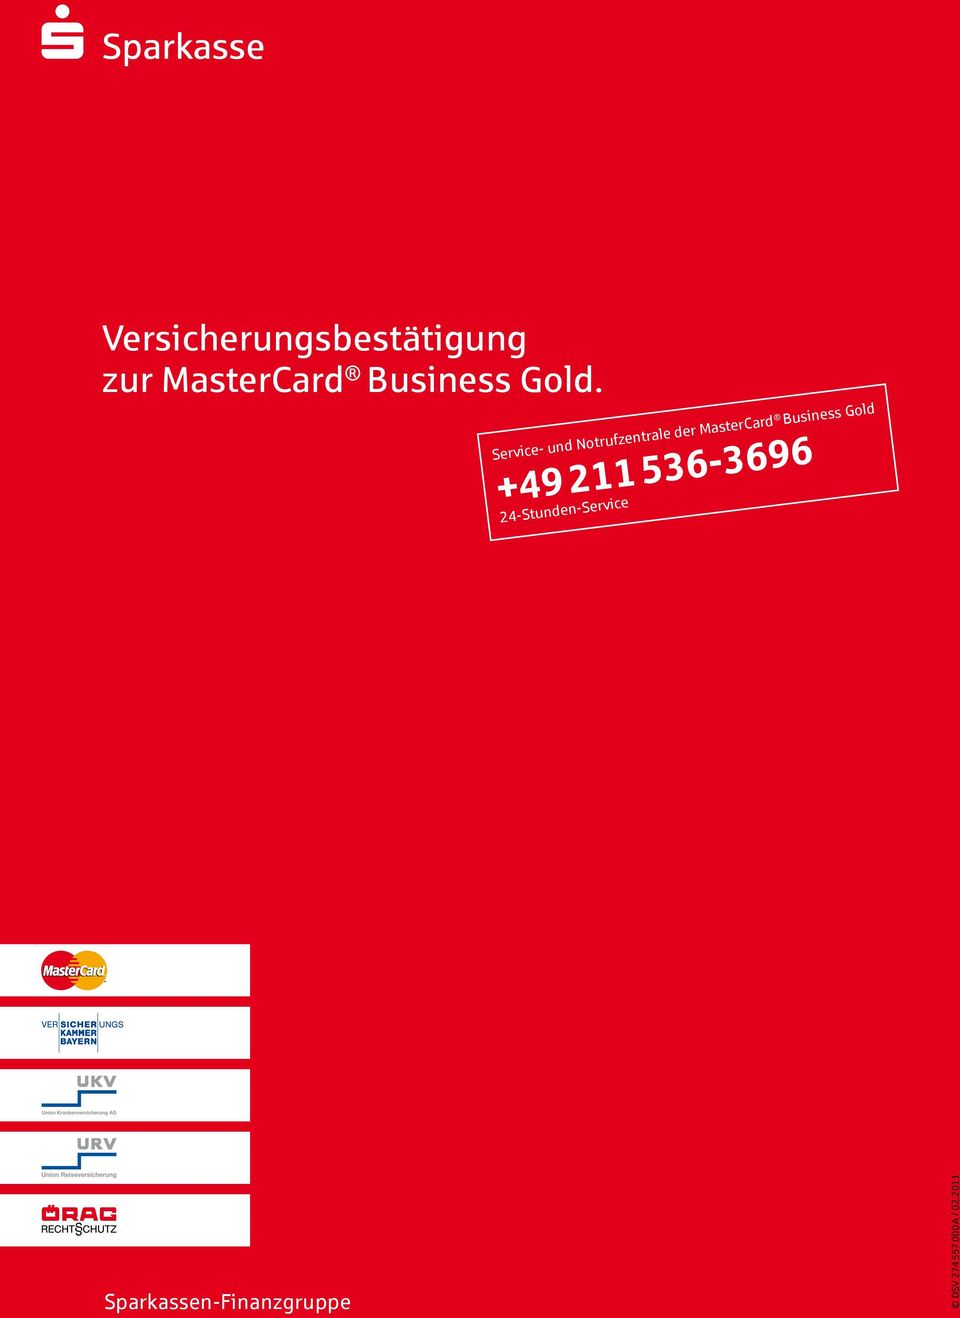 Service- und Notrufzentrale der MasterCard Business